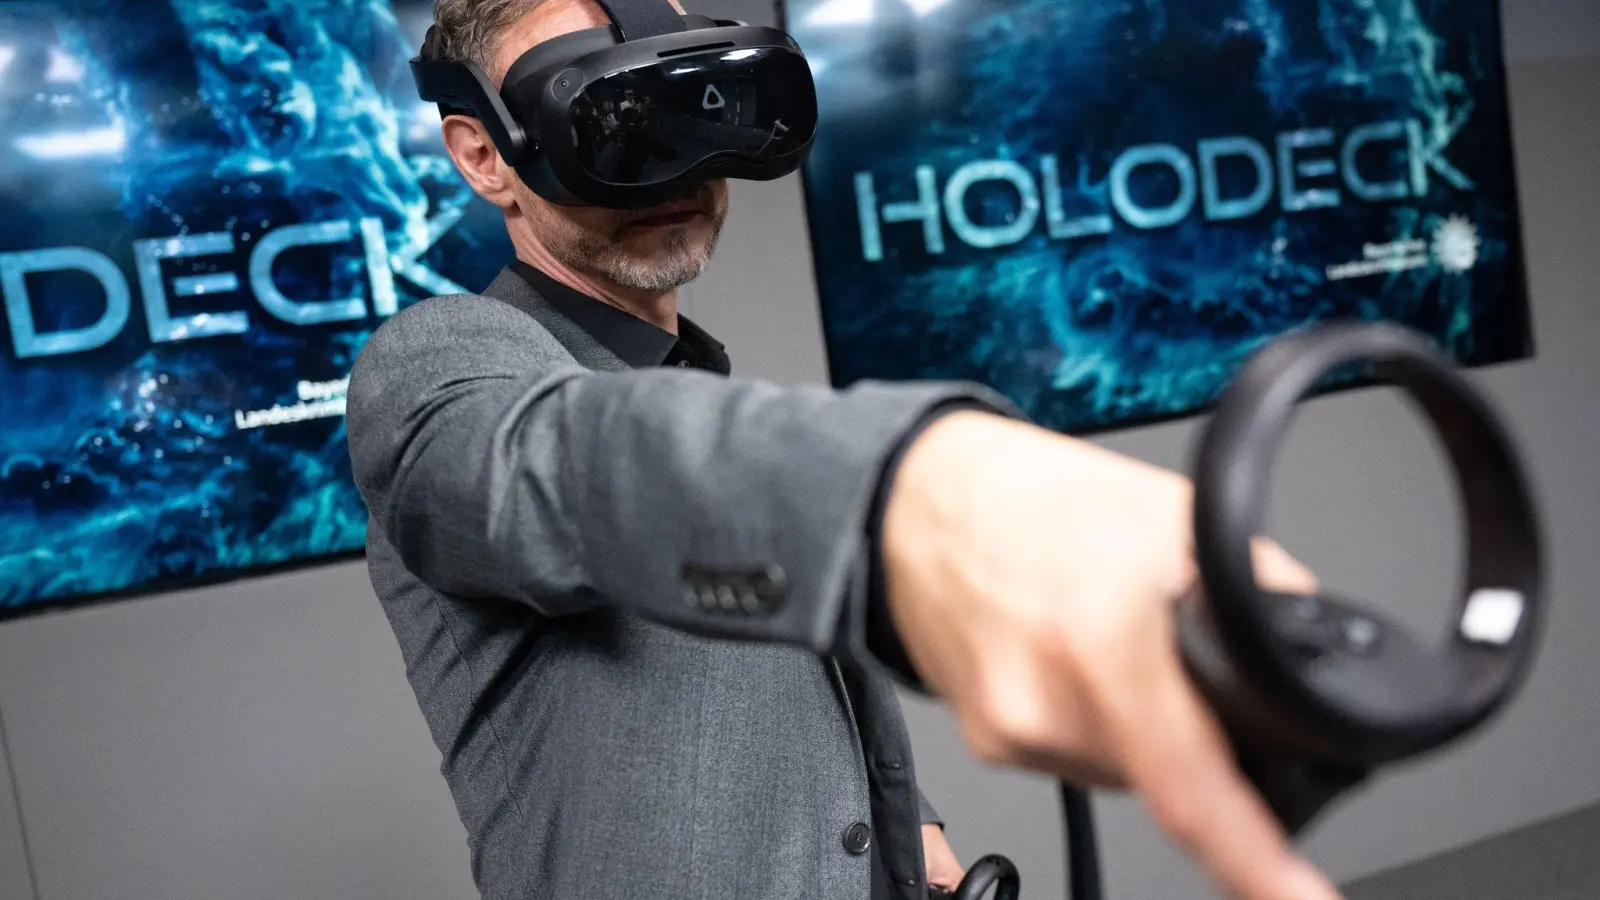 Ralf Breker, Leiter der forensischen Medientechnik beim LKA, steht mit einer VR-Brille während einer Pressekonferenz im Tatort-Virtual-Reality-Raum (Holodeck). (Foto: Sven Hoppe/dpa)